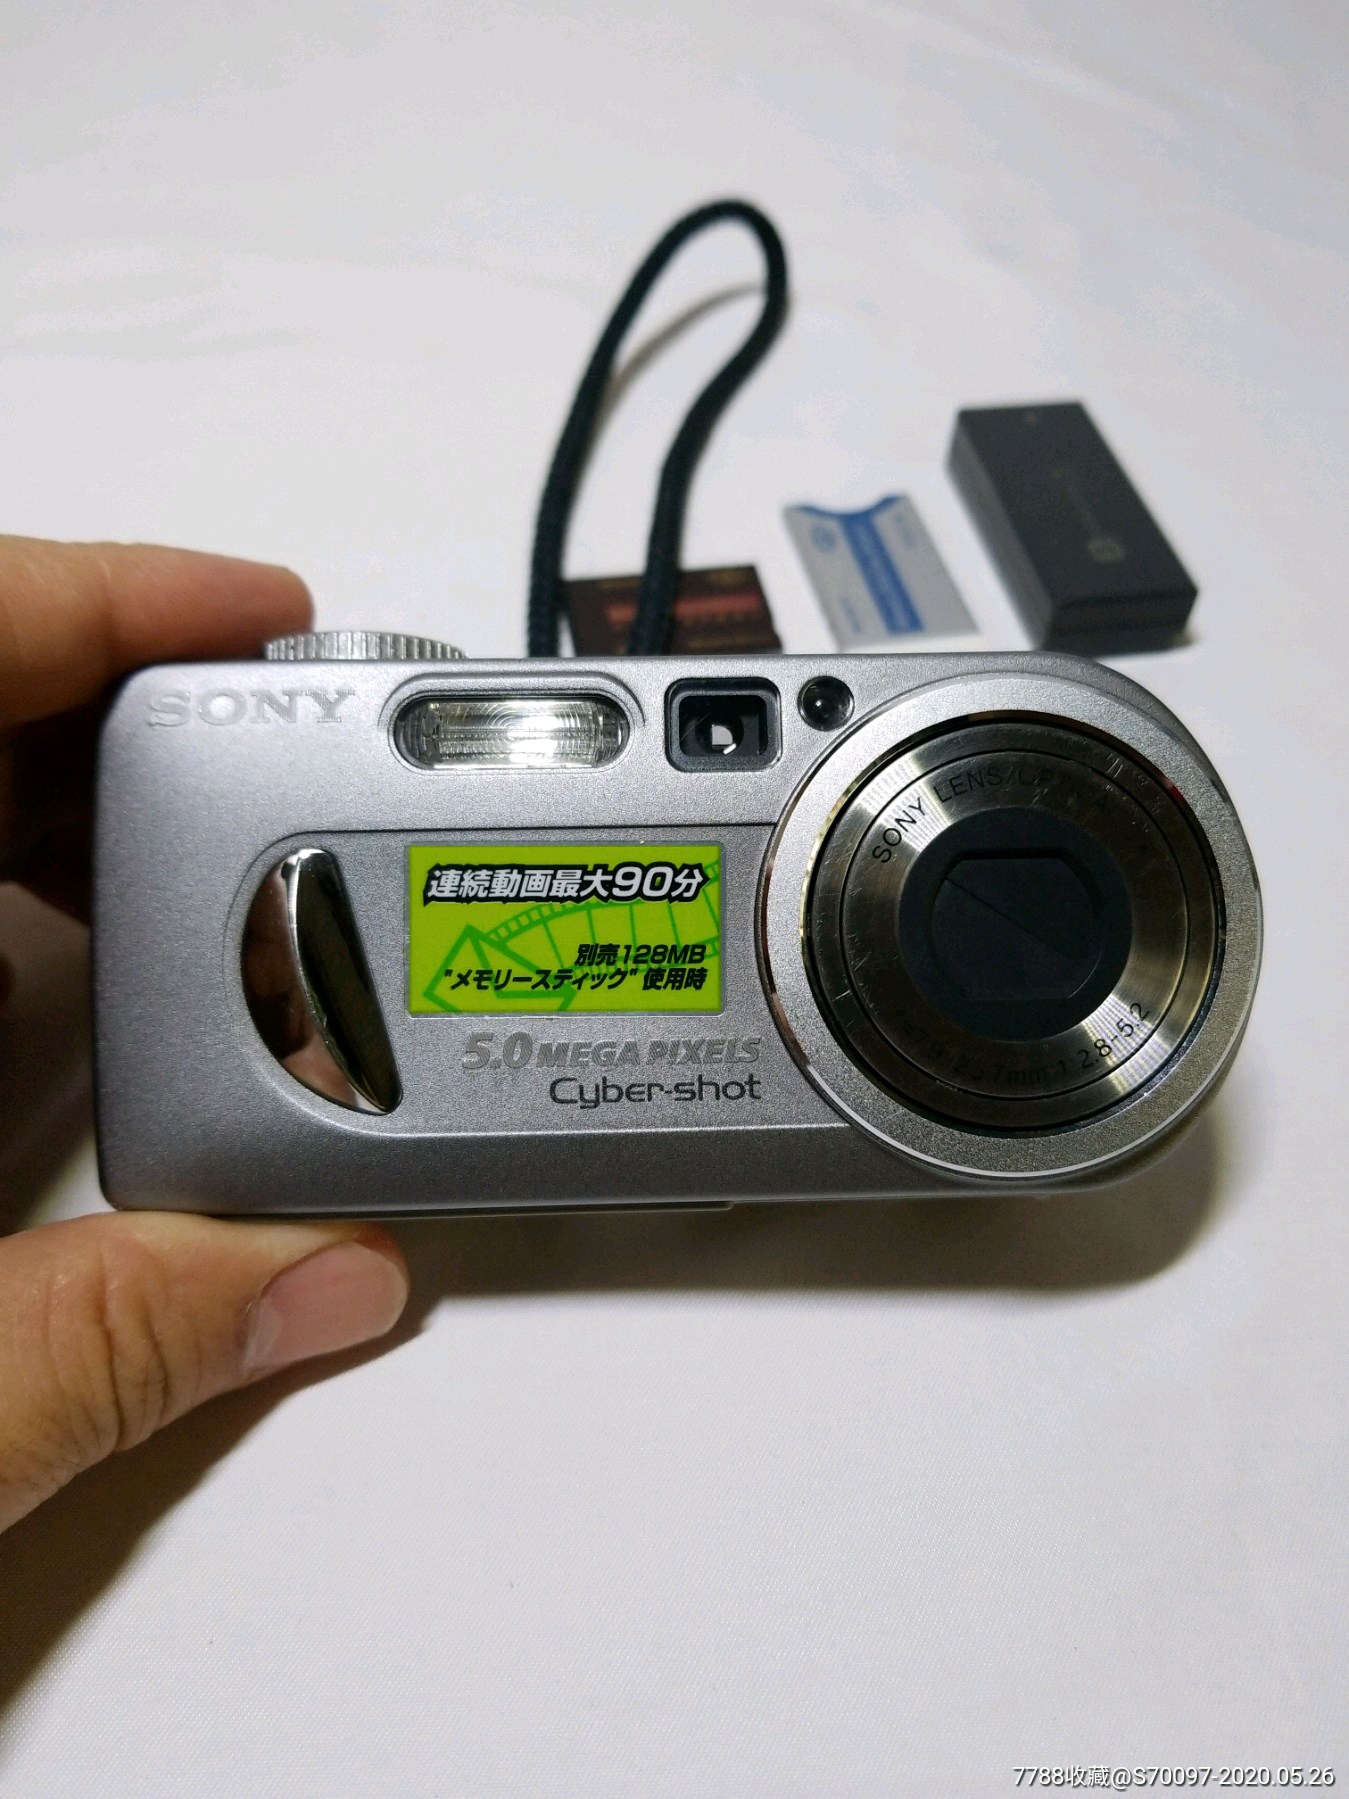 sony日本索尼微型袖珍数码老相机p10,老古董老照片拍照相机,非单反